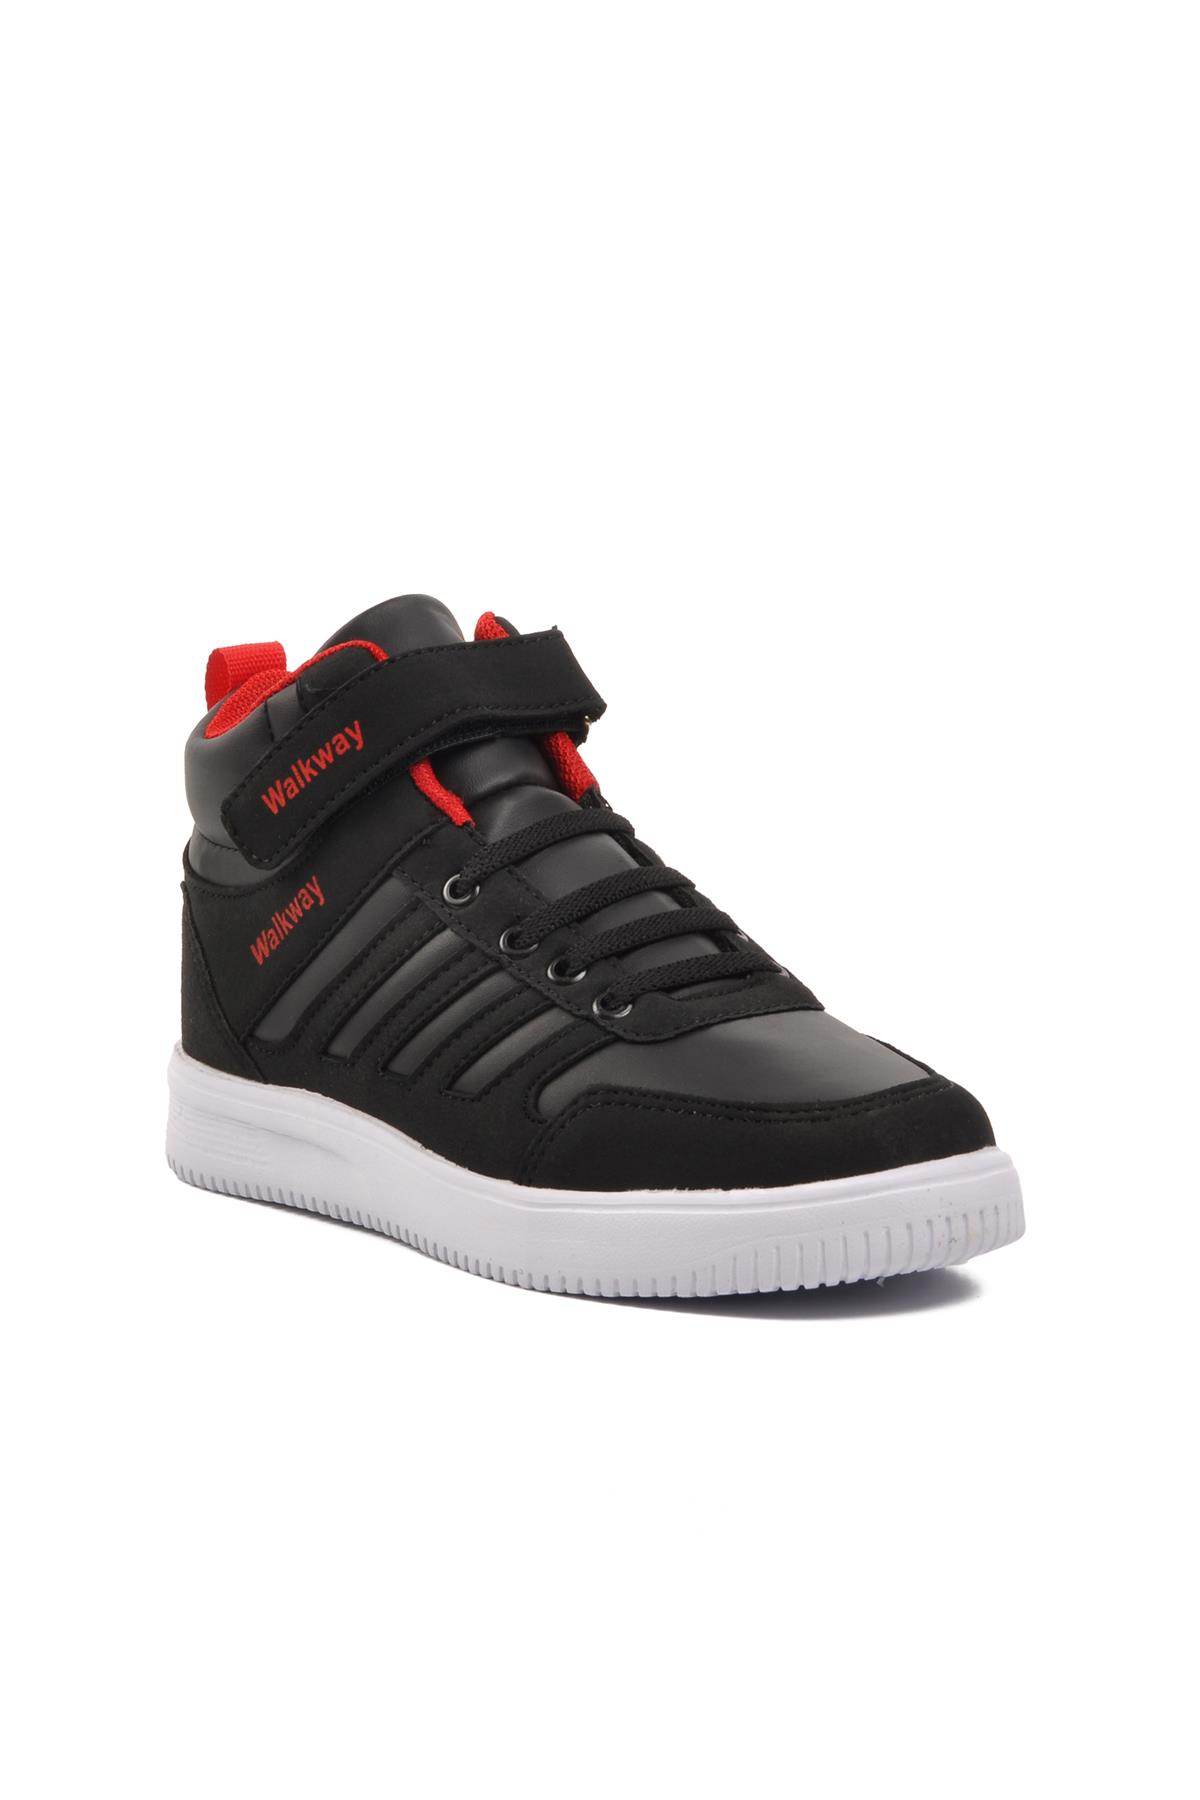 Walkway Mely Hi-F Siyah-Beyaz-Kırmızı Cırtlı Çocuk Hi Sneaker Walkway Çocuk Spor Ayakkabı